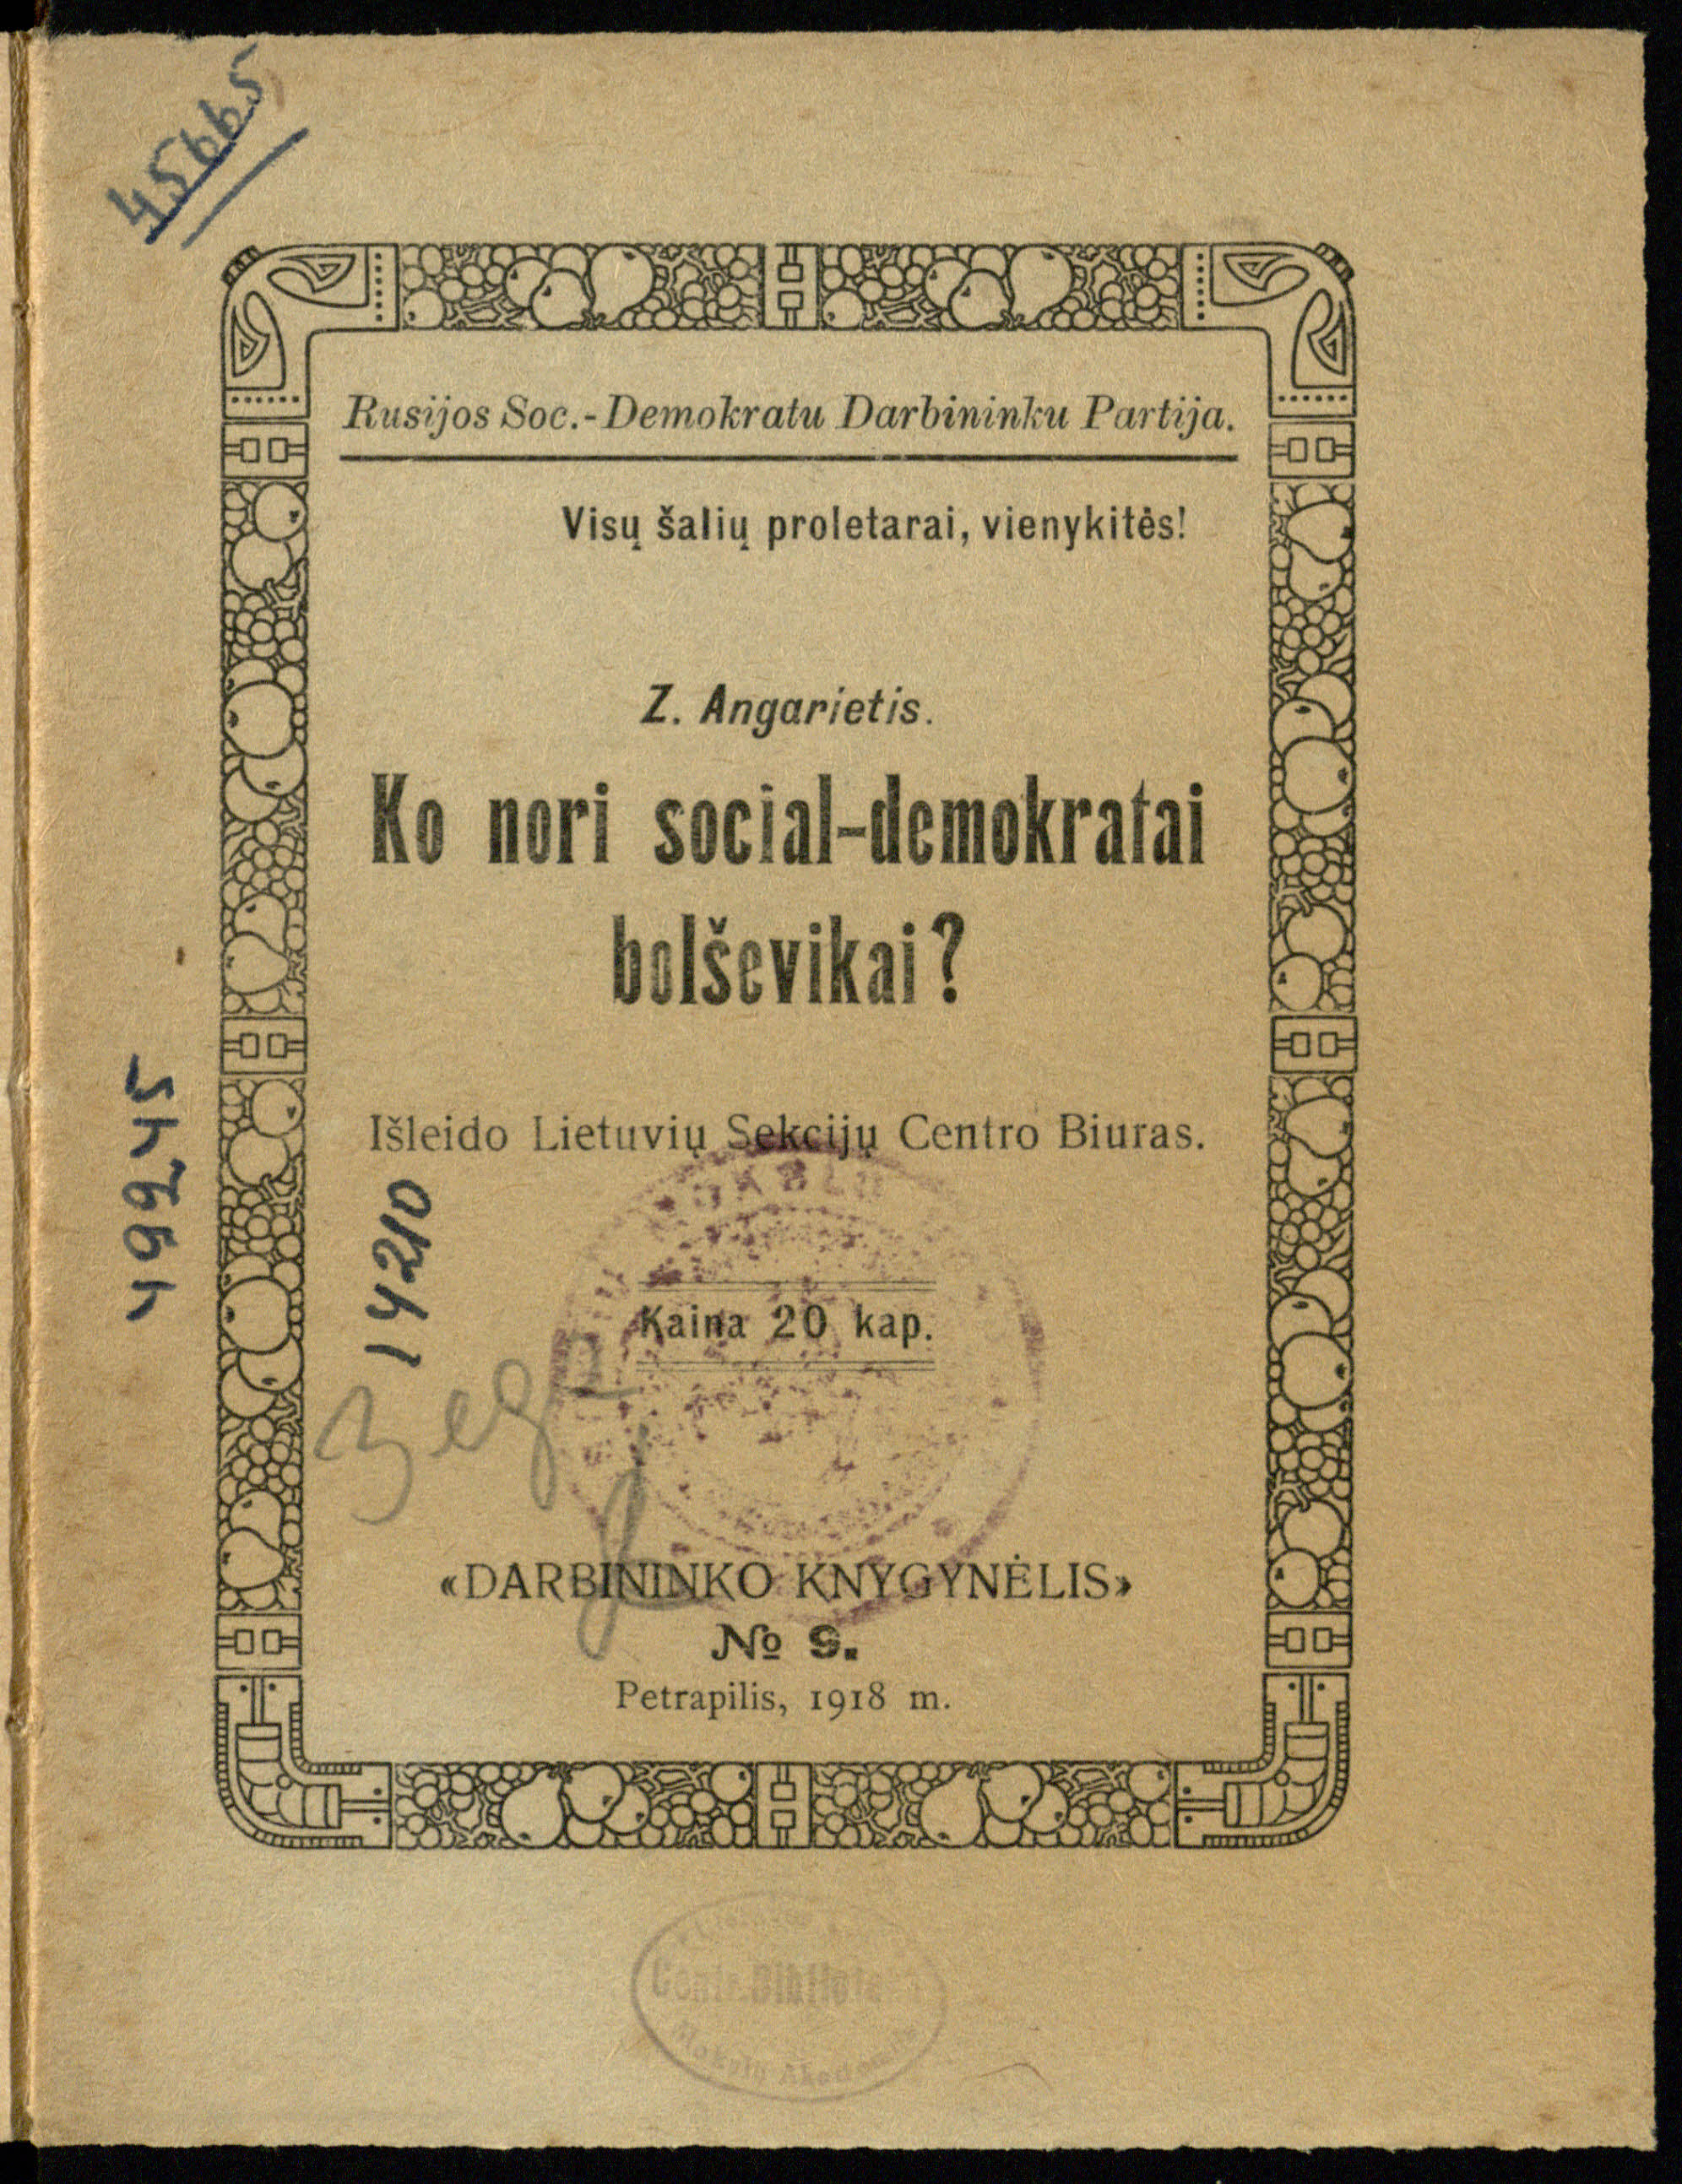 Zigmo Angariečio brošiūra <b>Ko nori social-demokratai bolševikai?</b> (Voronežas, 1918)